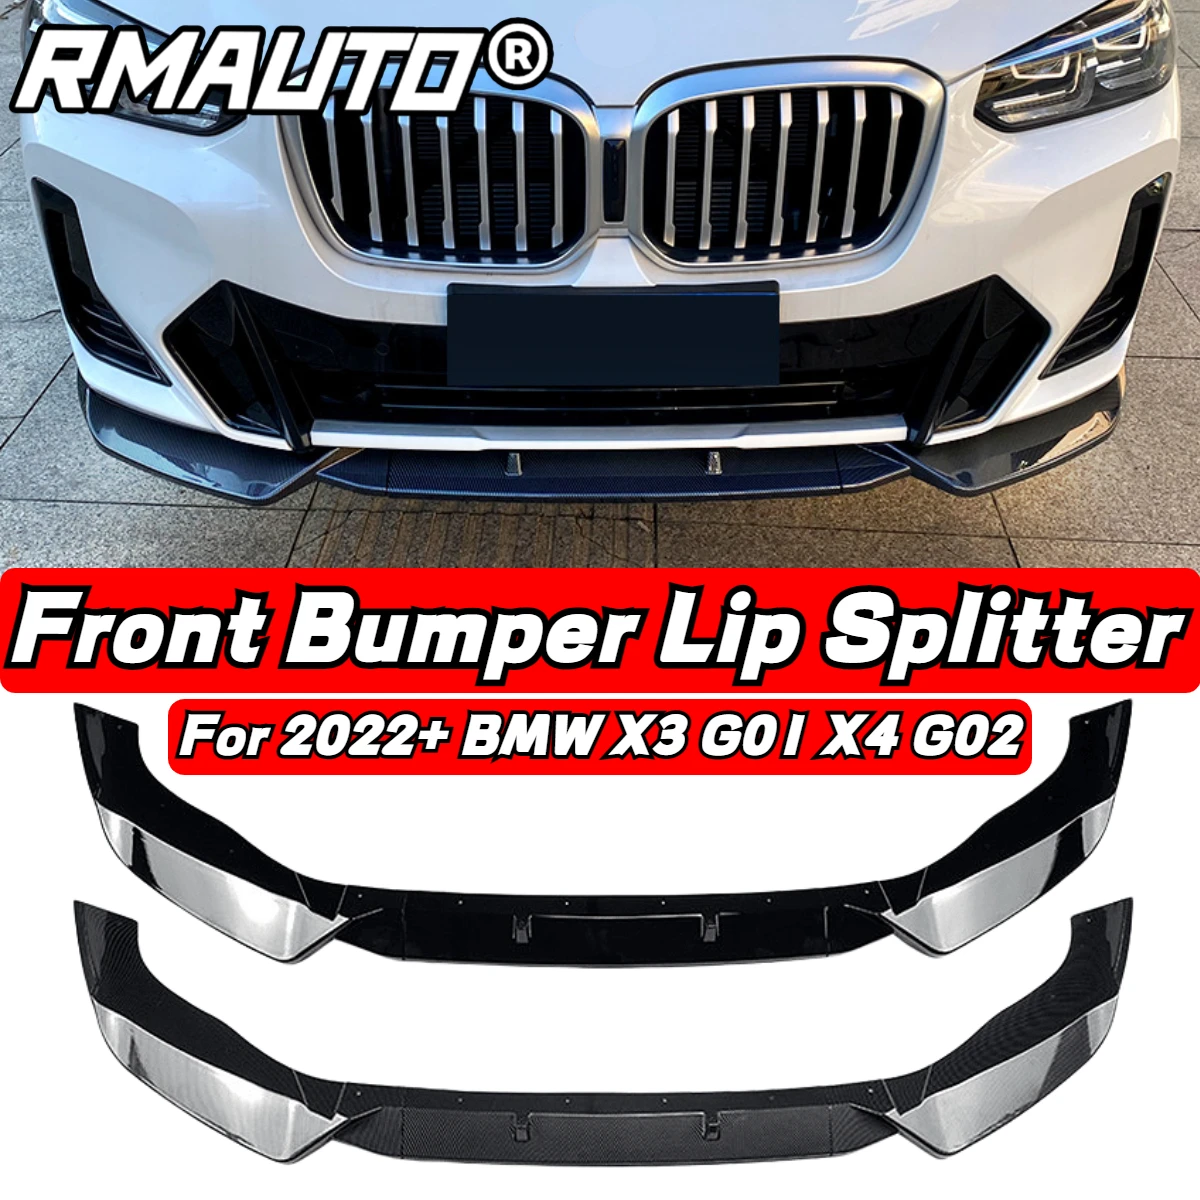 

RMAUTO автомобильный передний бампер из углеродного волокна, спойлер, сплиттер, диффузор, защита корпуса, комплект для 2022 + BMW X3 G01 X4 G02, M-Pack, аксессуары